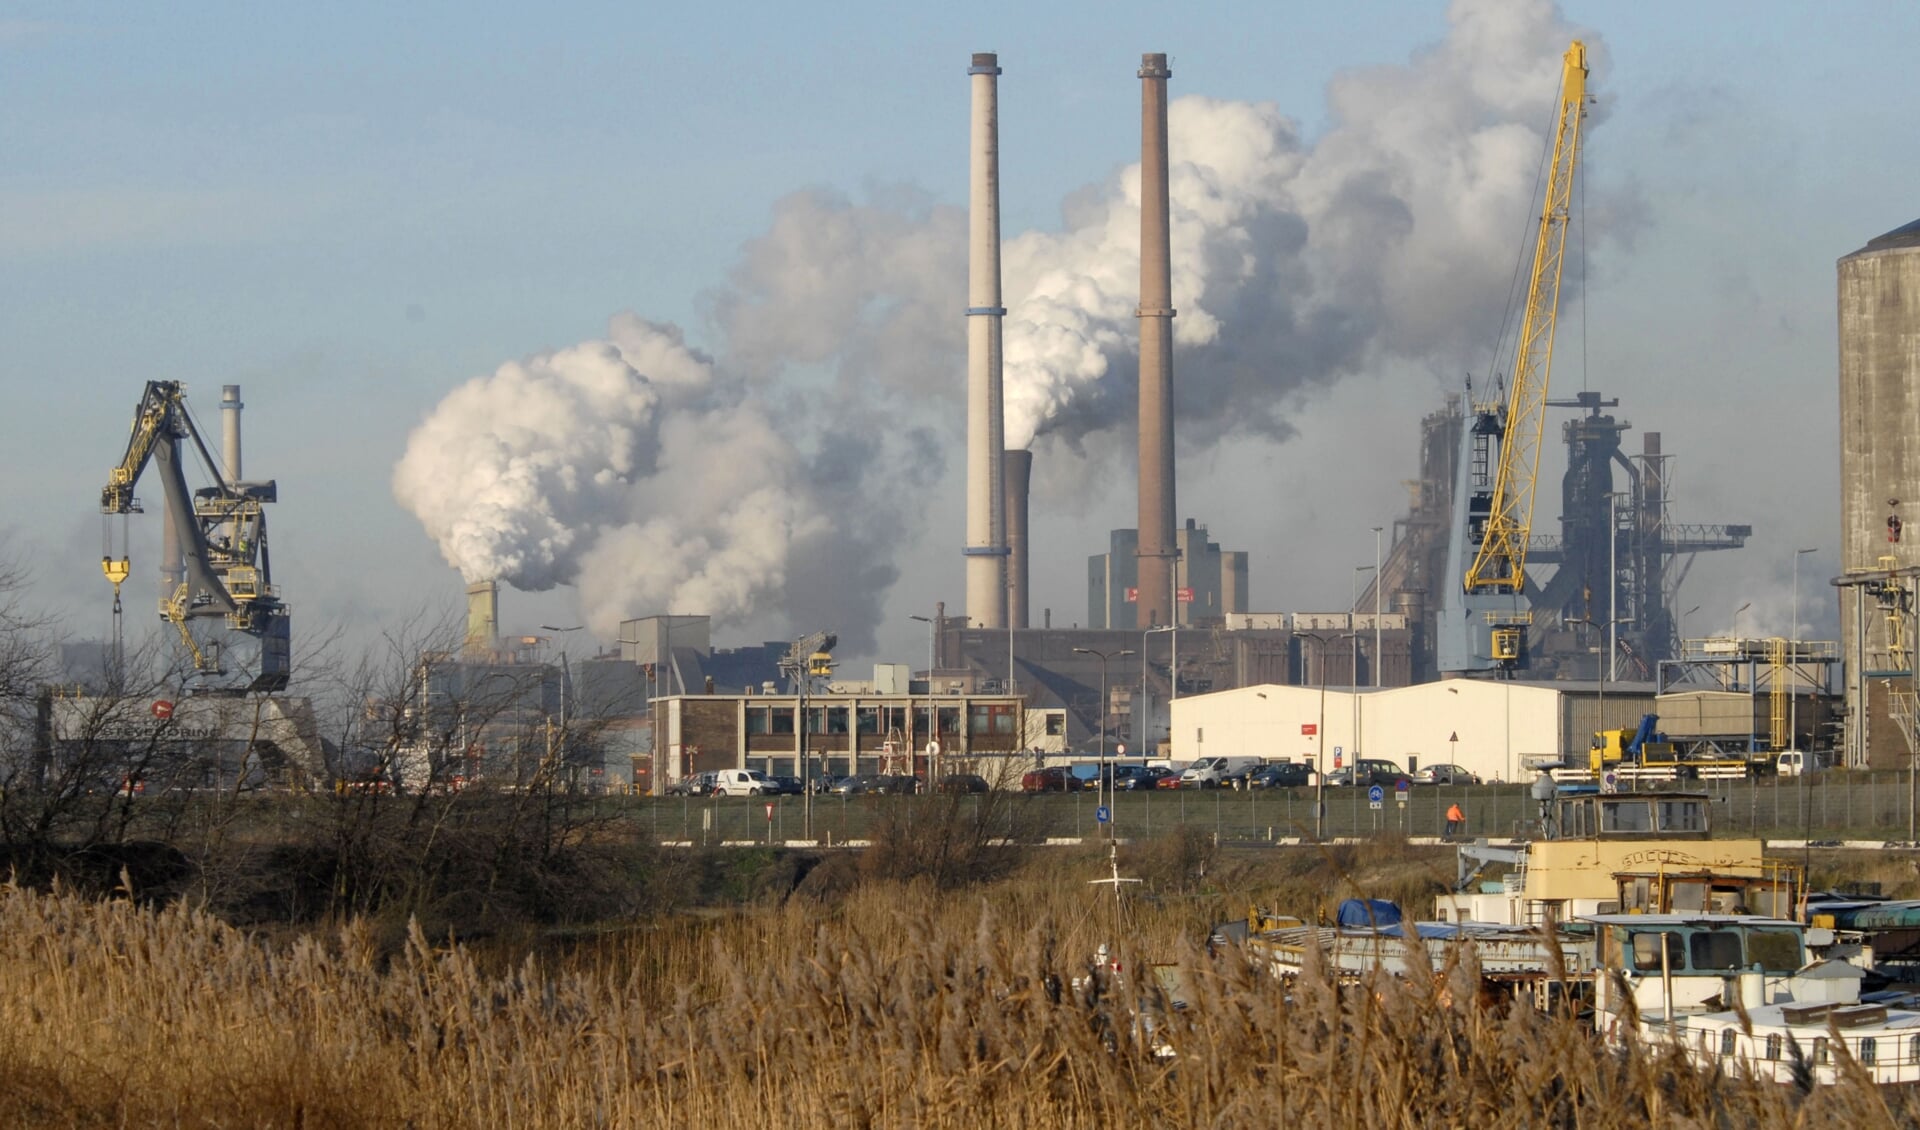  Provincie Noord-Holland heeft de vergunning van de Kooksfabrieken van Tata Steel in IJmuiden laten vergelijken met de daadwerkelijke situatie.